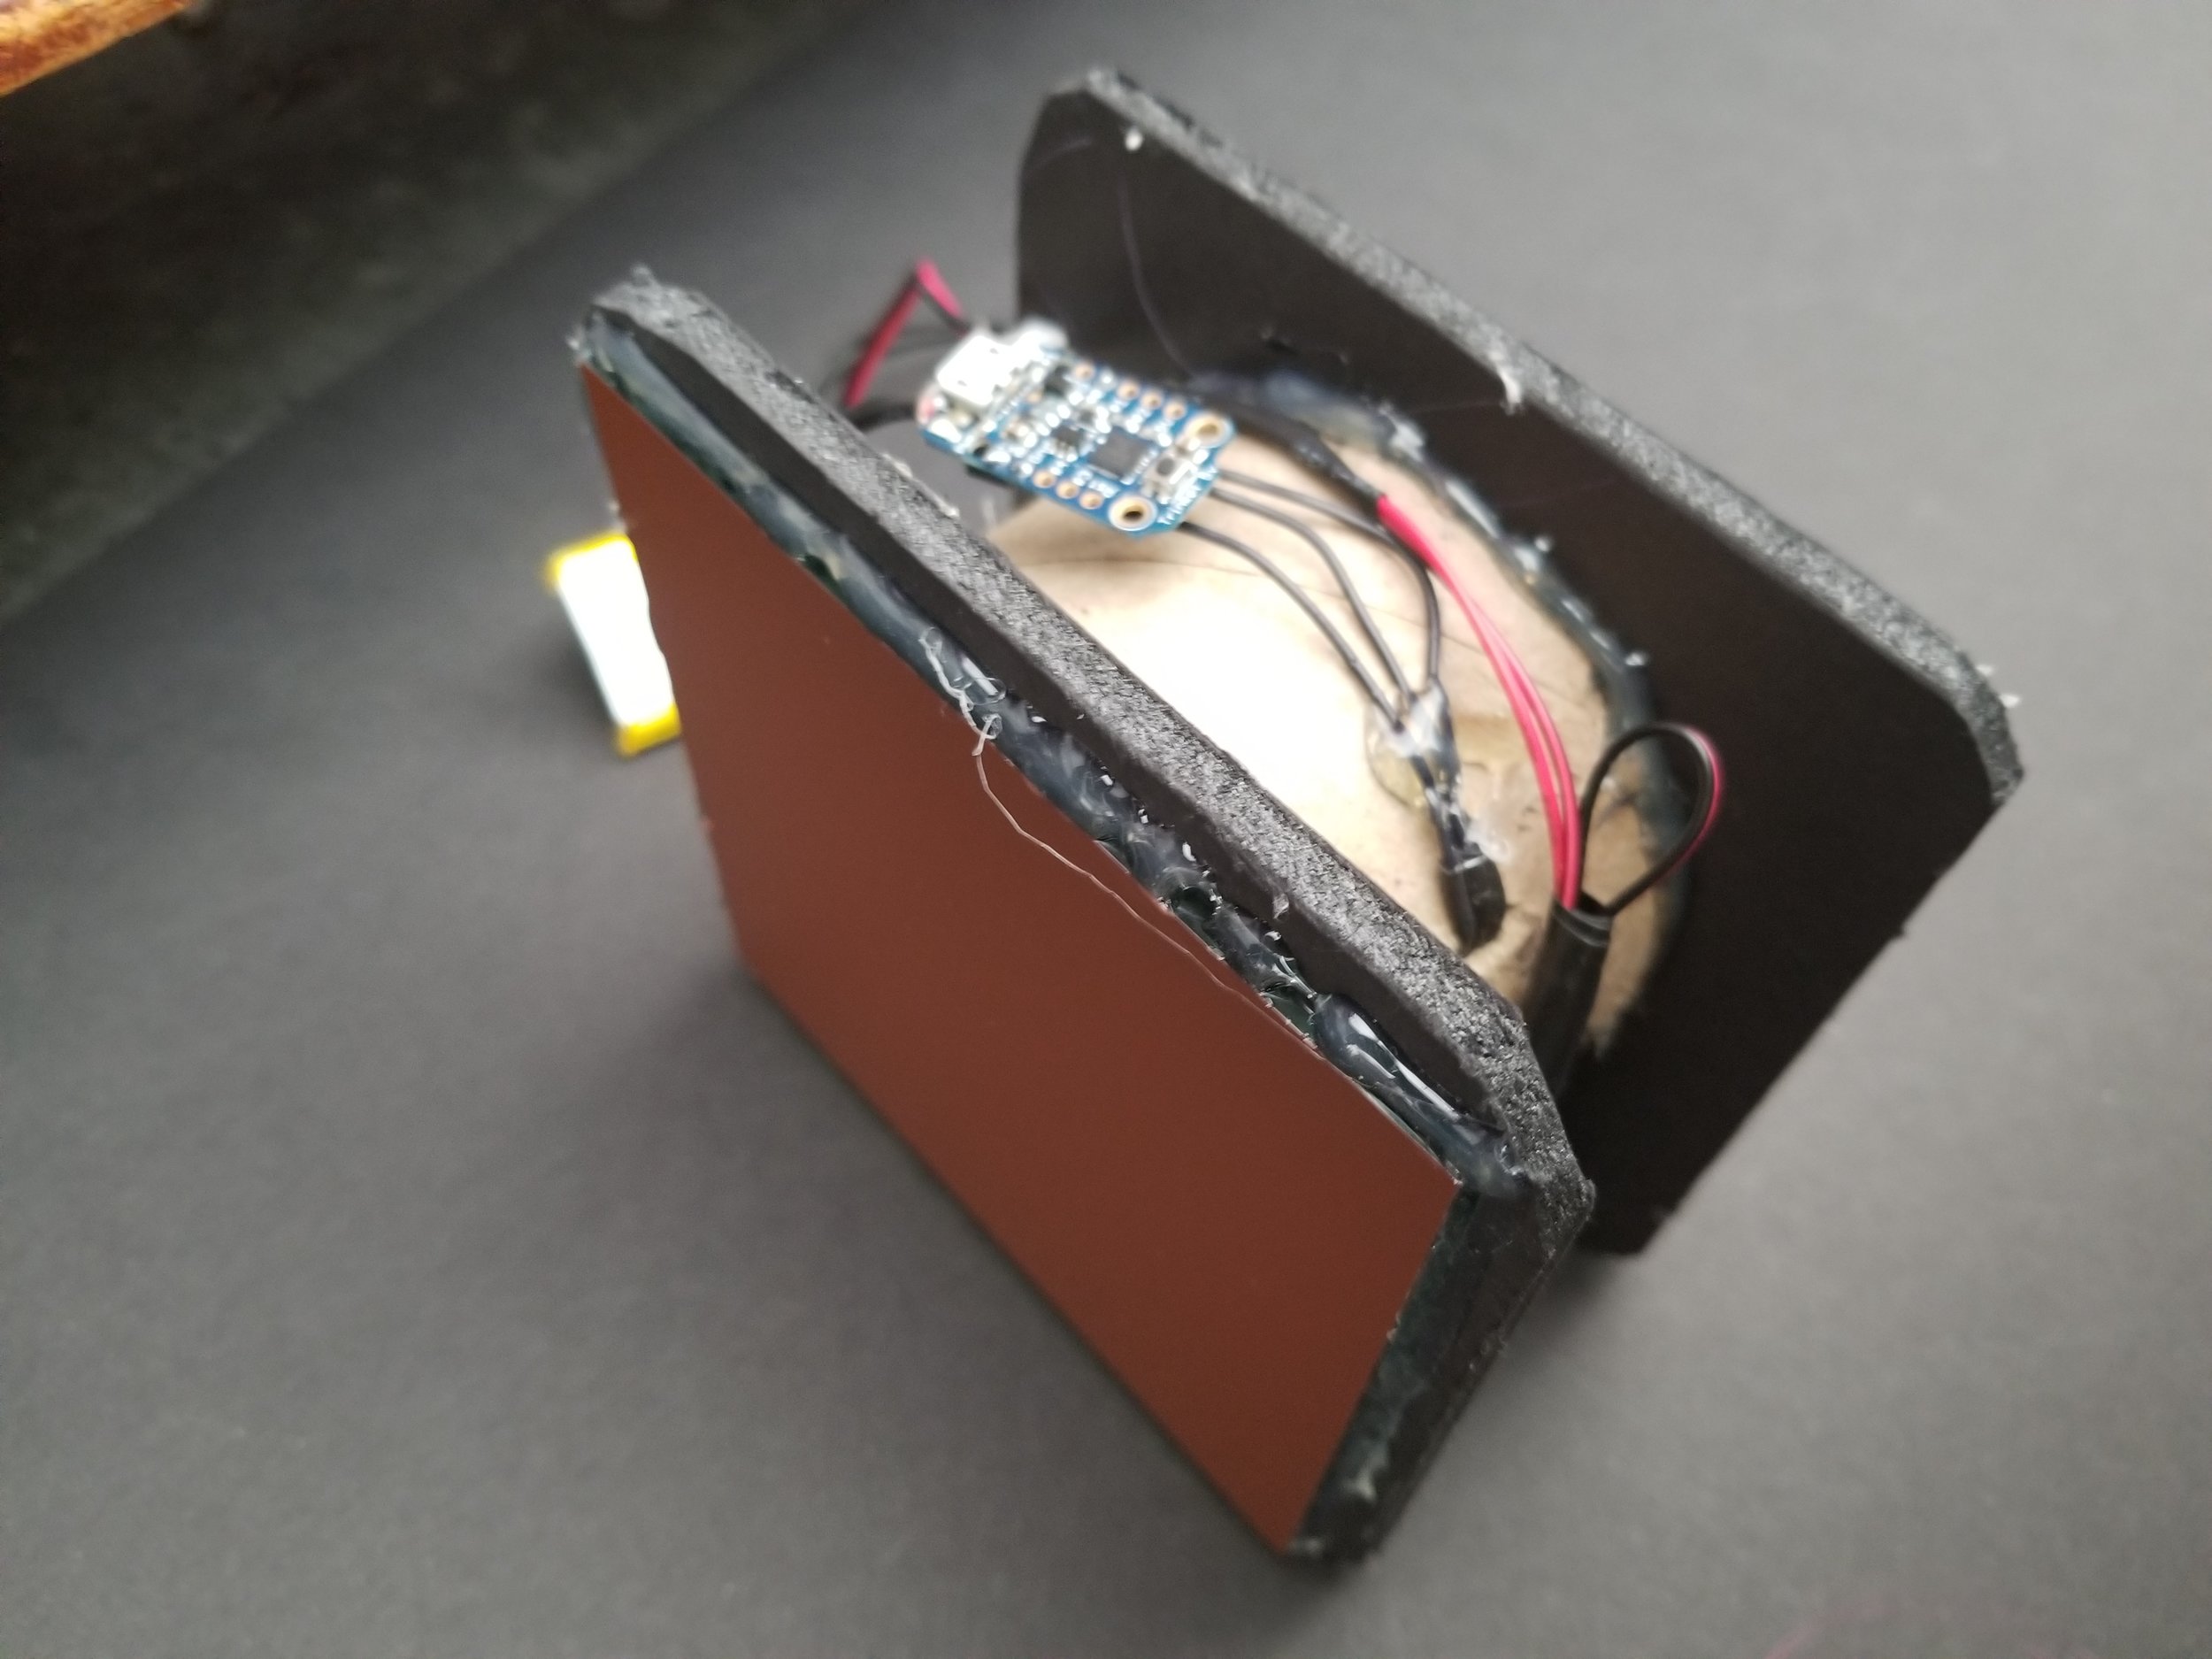 A lipo battery easily tucks away